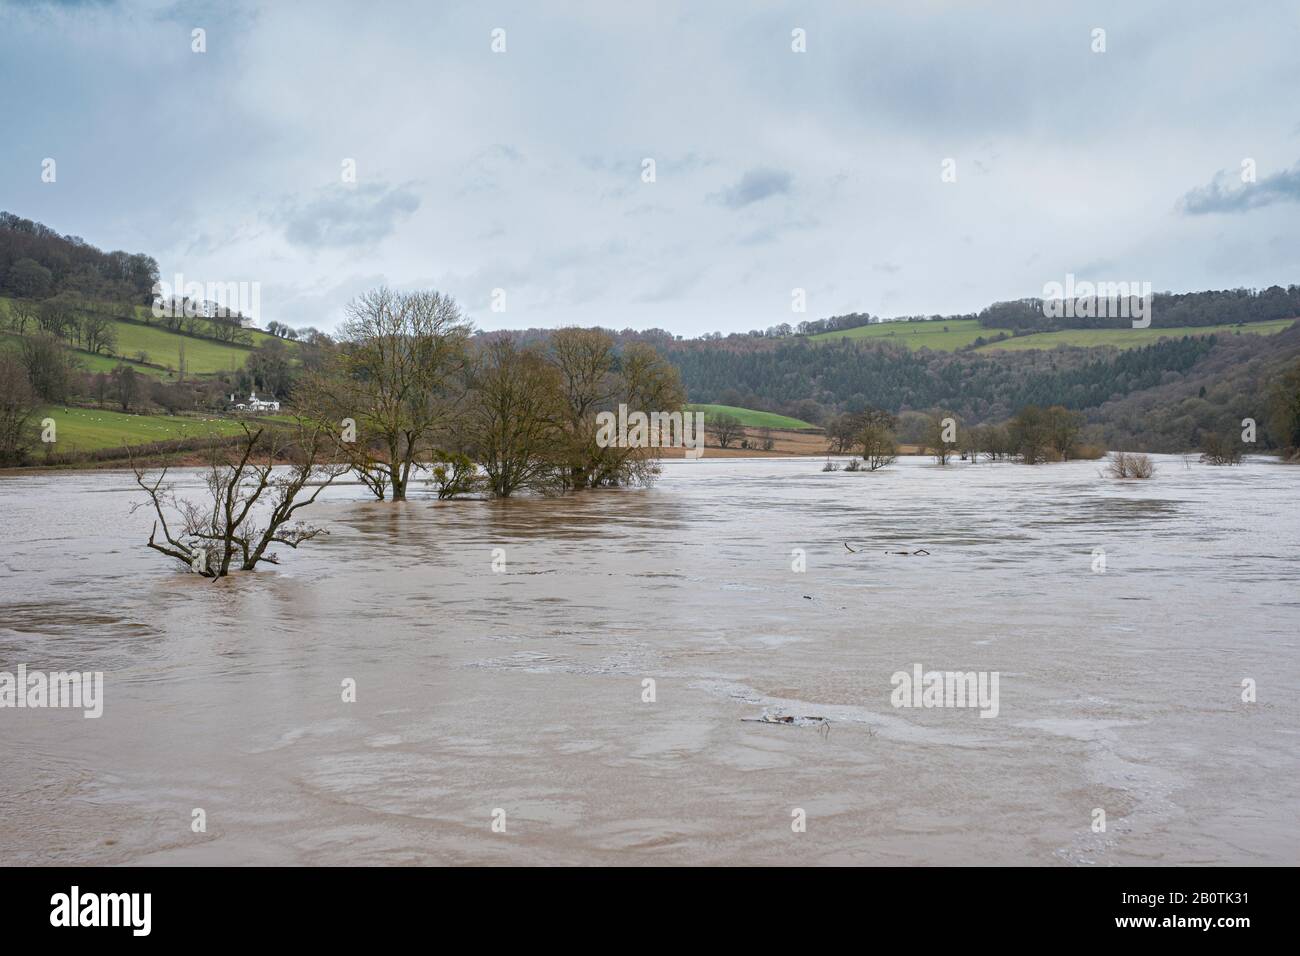 La rivière Wye en forme de spate à Bigsweir, à la frontière du Monbucshire - Gloucestershire. Février 2020. Banque D'Images